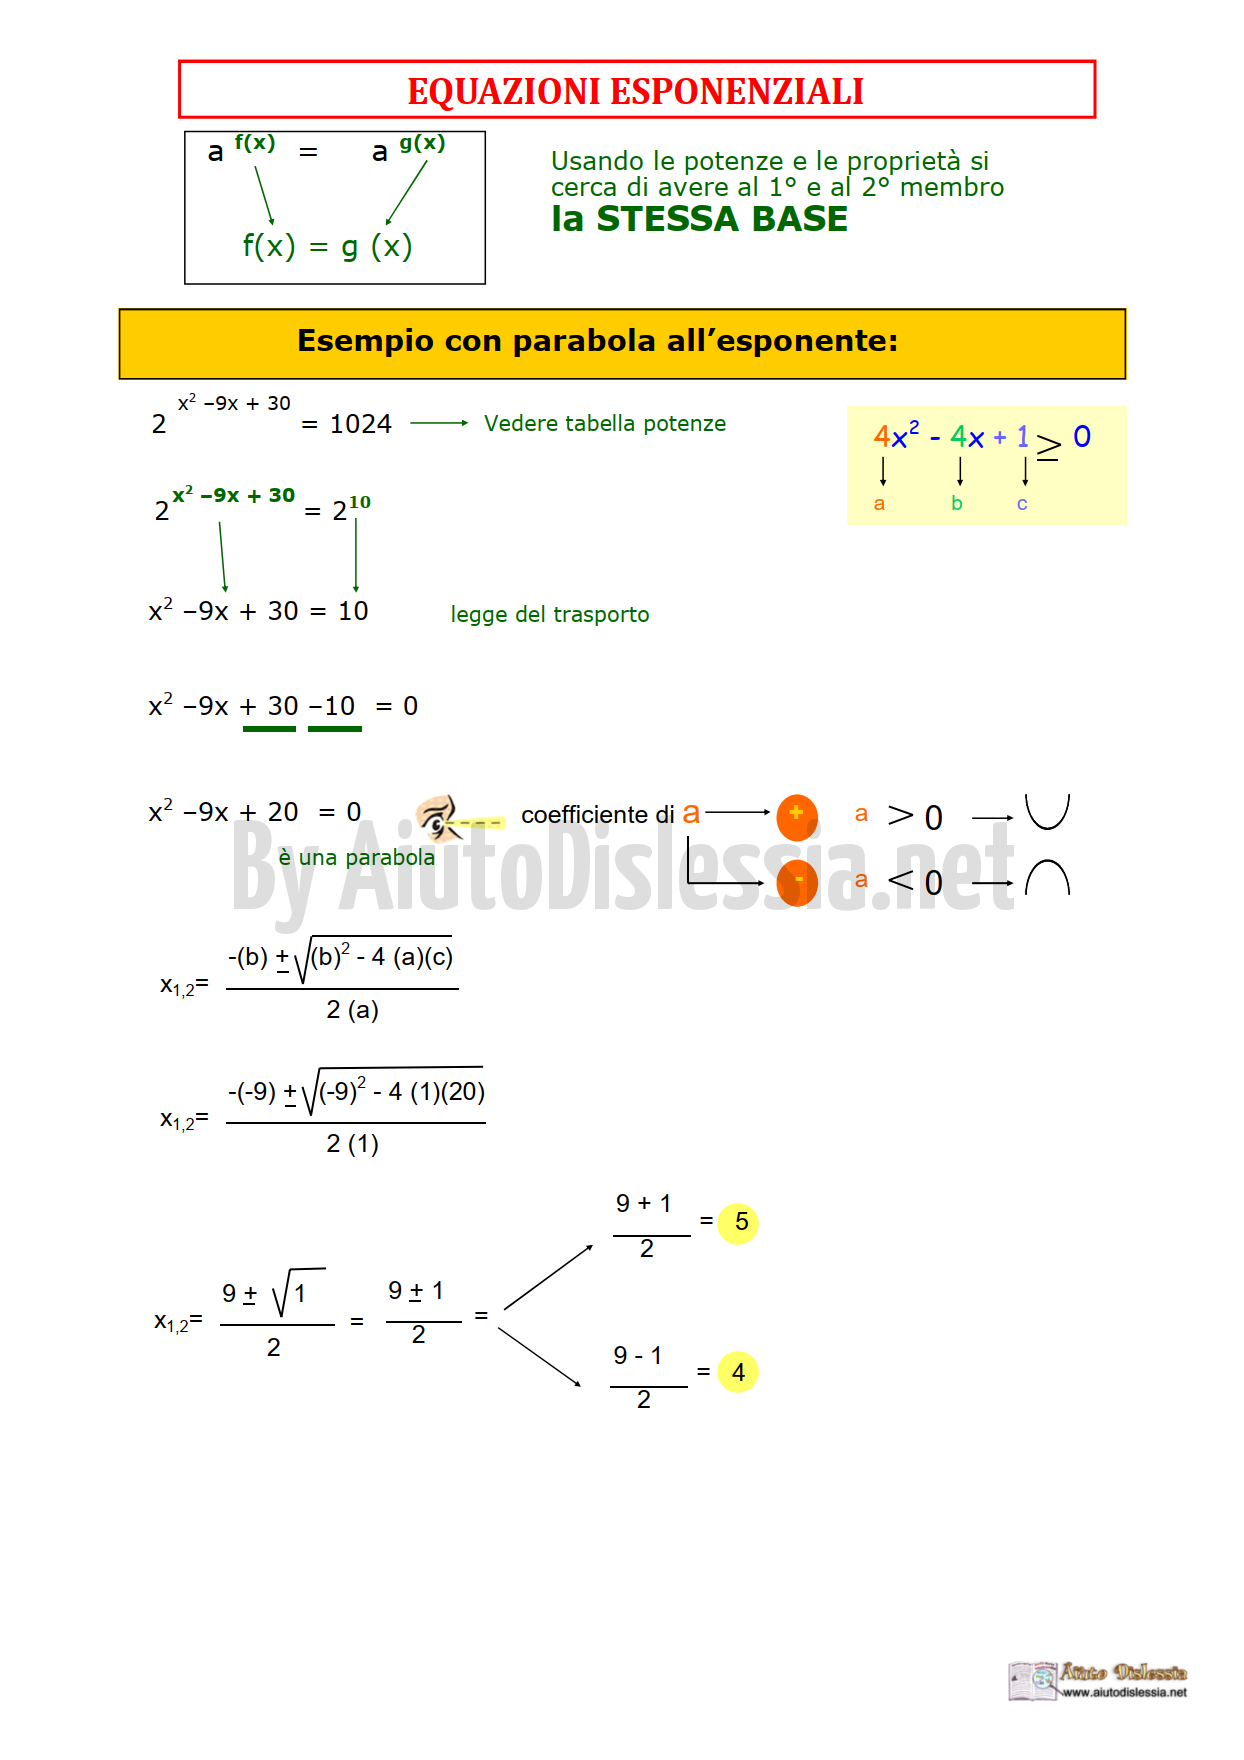 03.-Equazioni-esponenziali-esempi